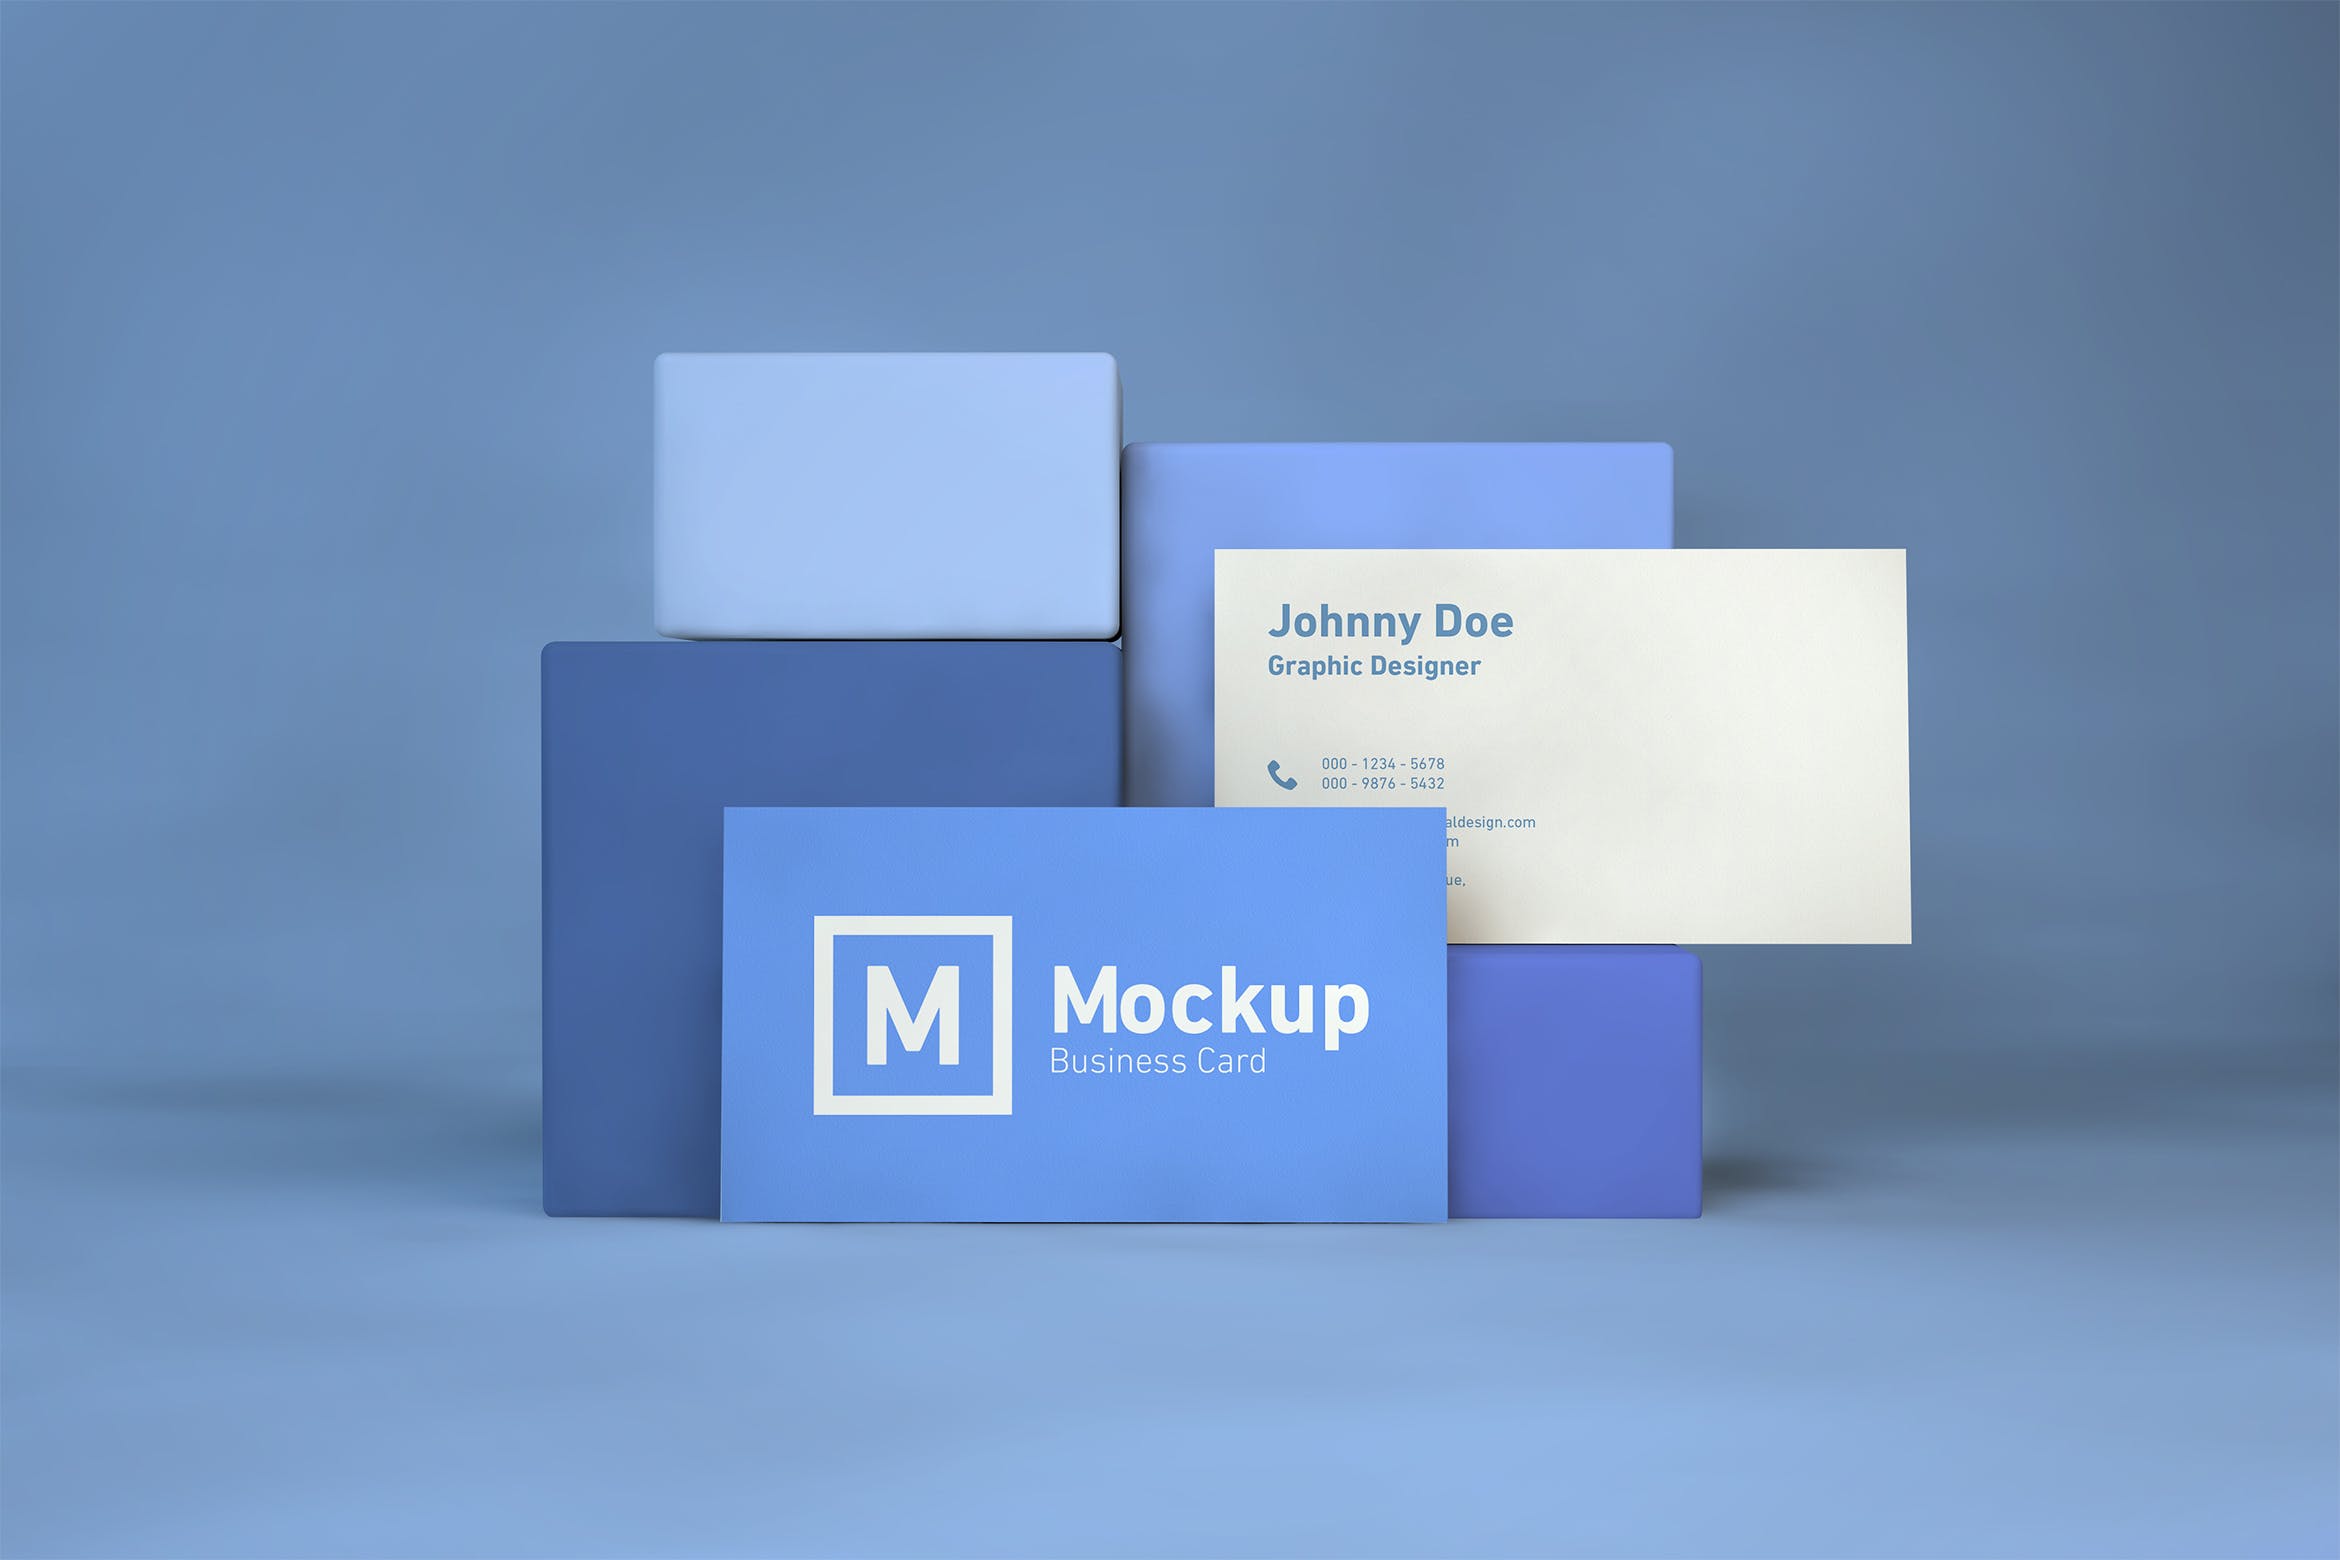 企业名片双面设计效果展示第一素材精选 Business Card On Blocks Mockup插图